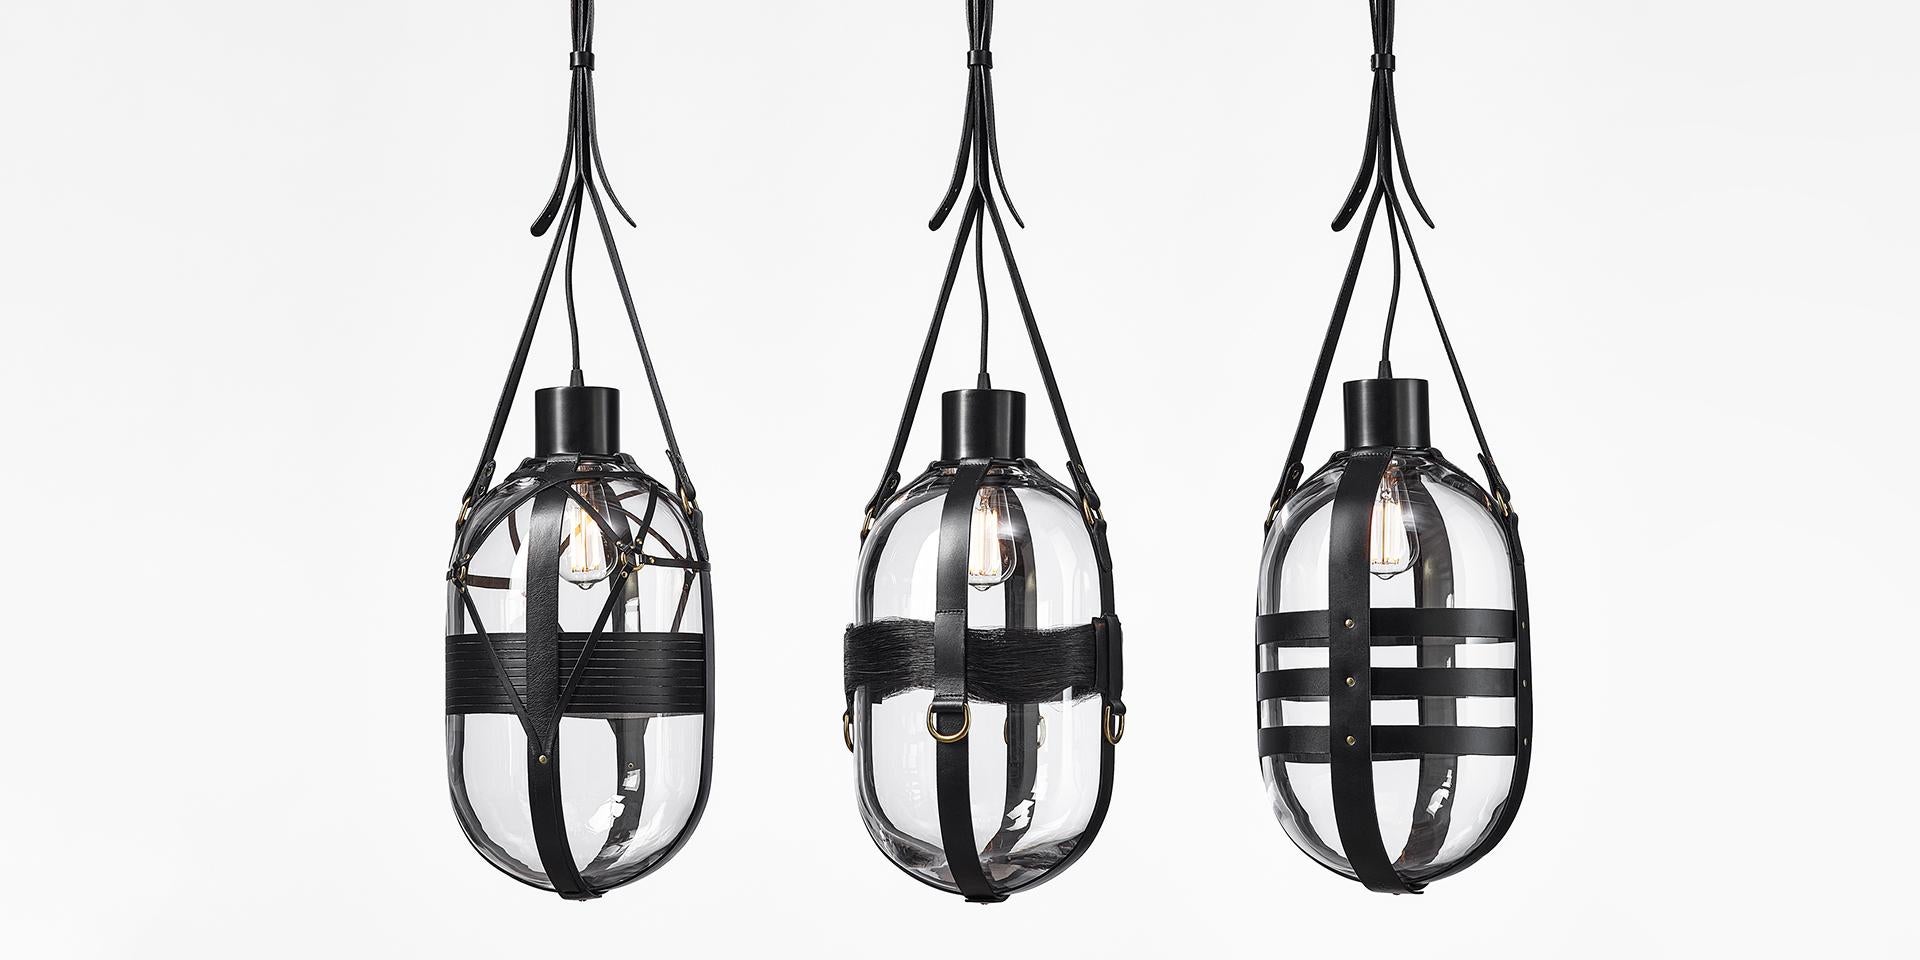 Contemporary Clear / Black Glass Pendant, Tied-Up Romance by Kateřina Handlová for Bomma